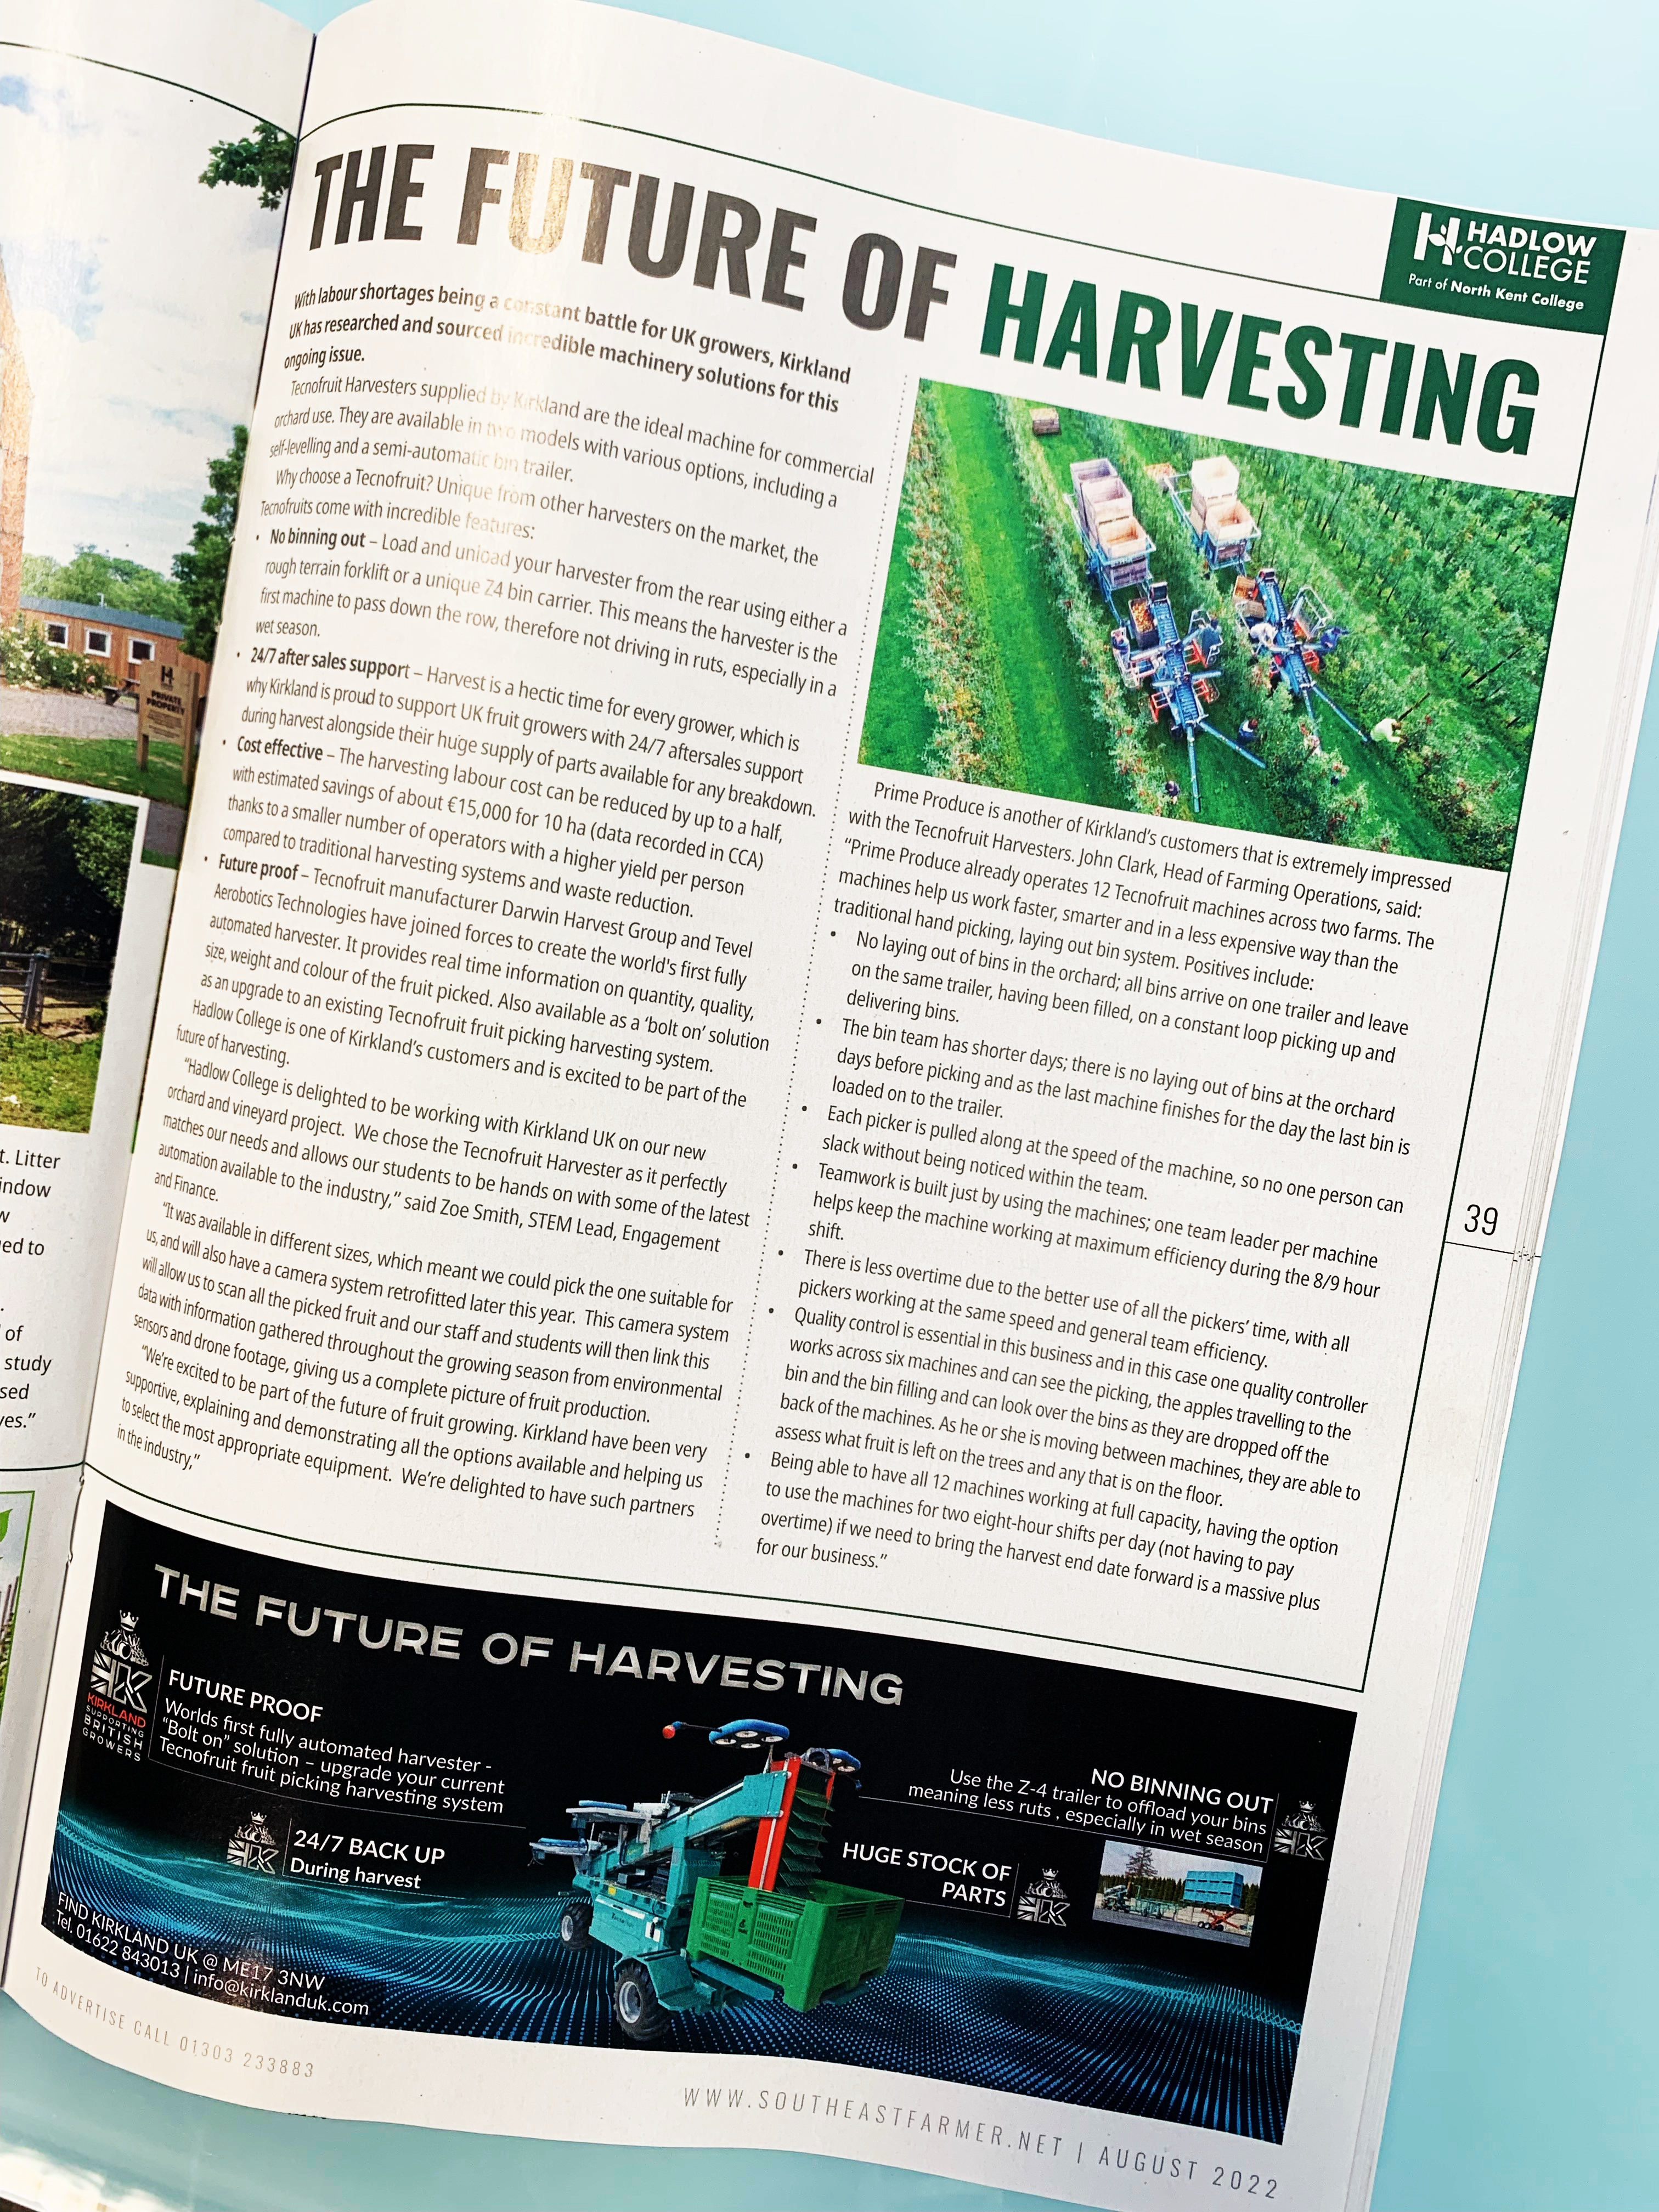 Hadlow College buy Tecnofruit Harvester from Kirkland UK 